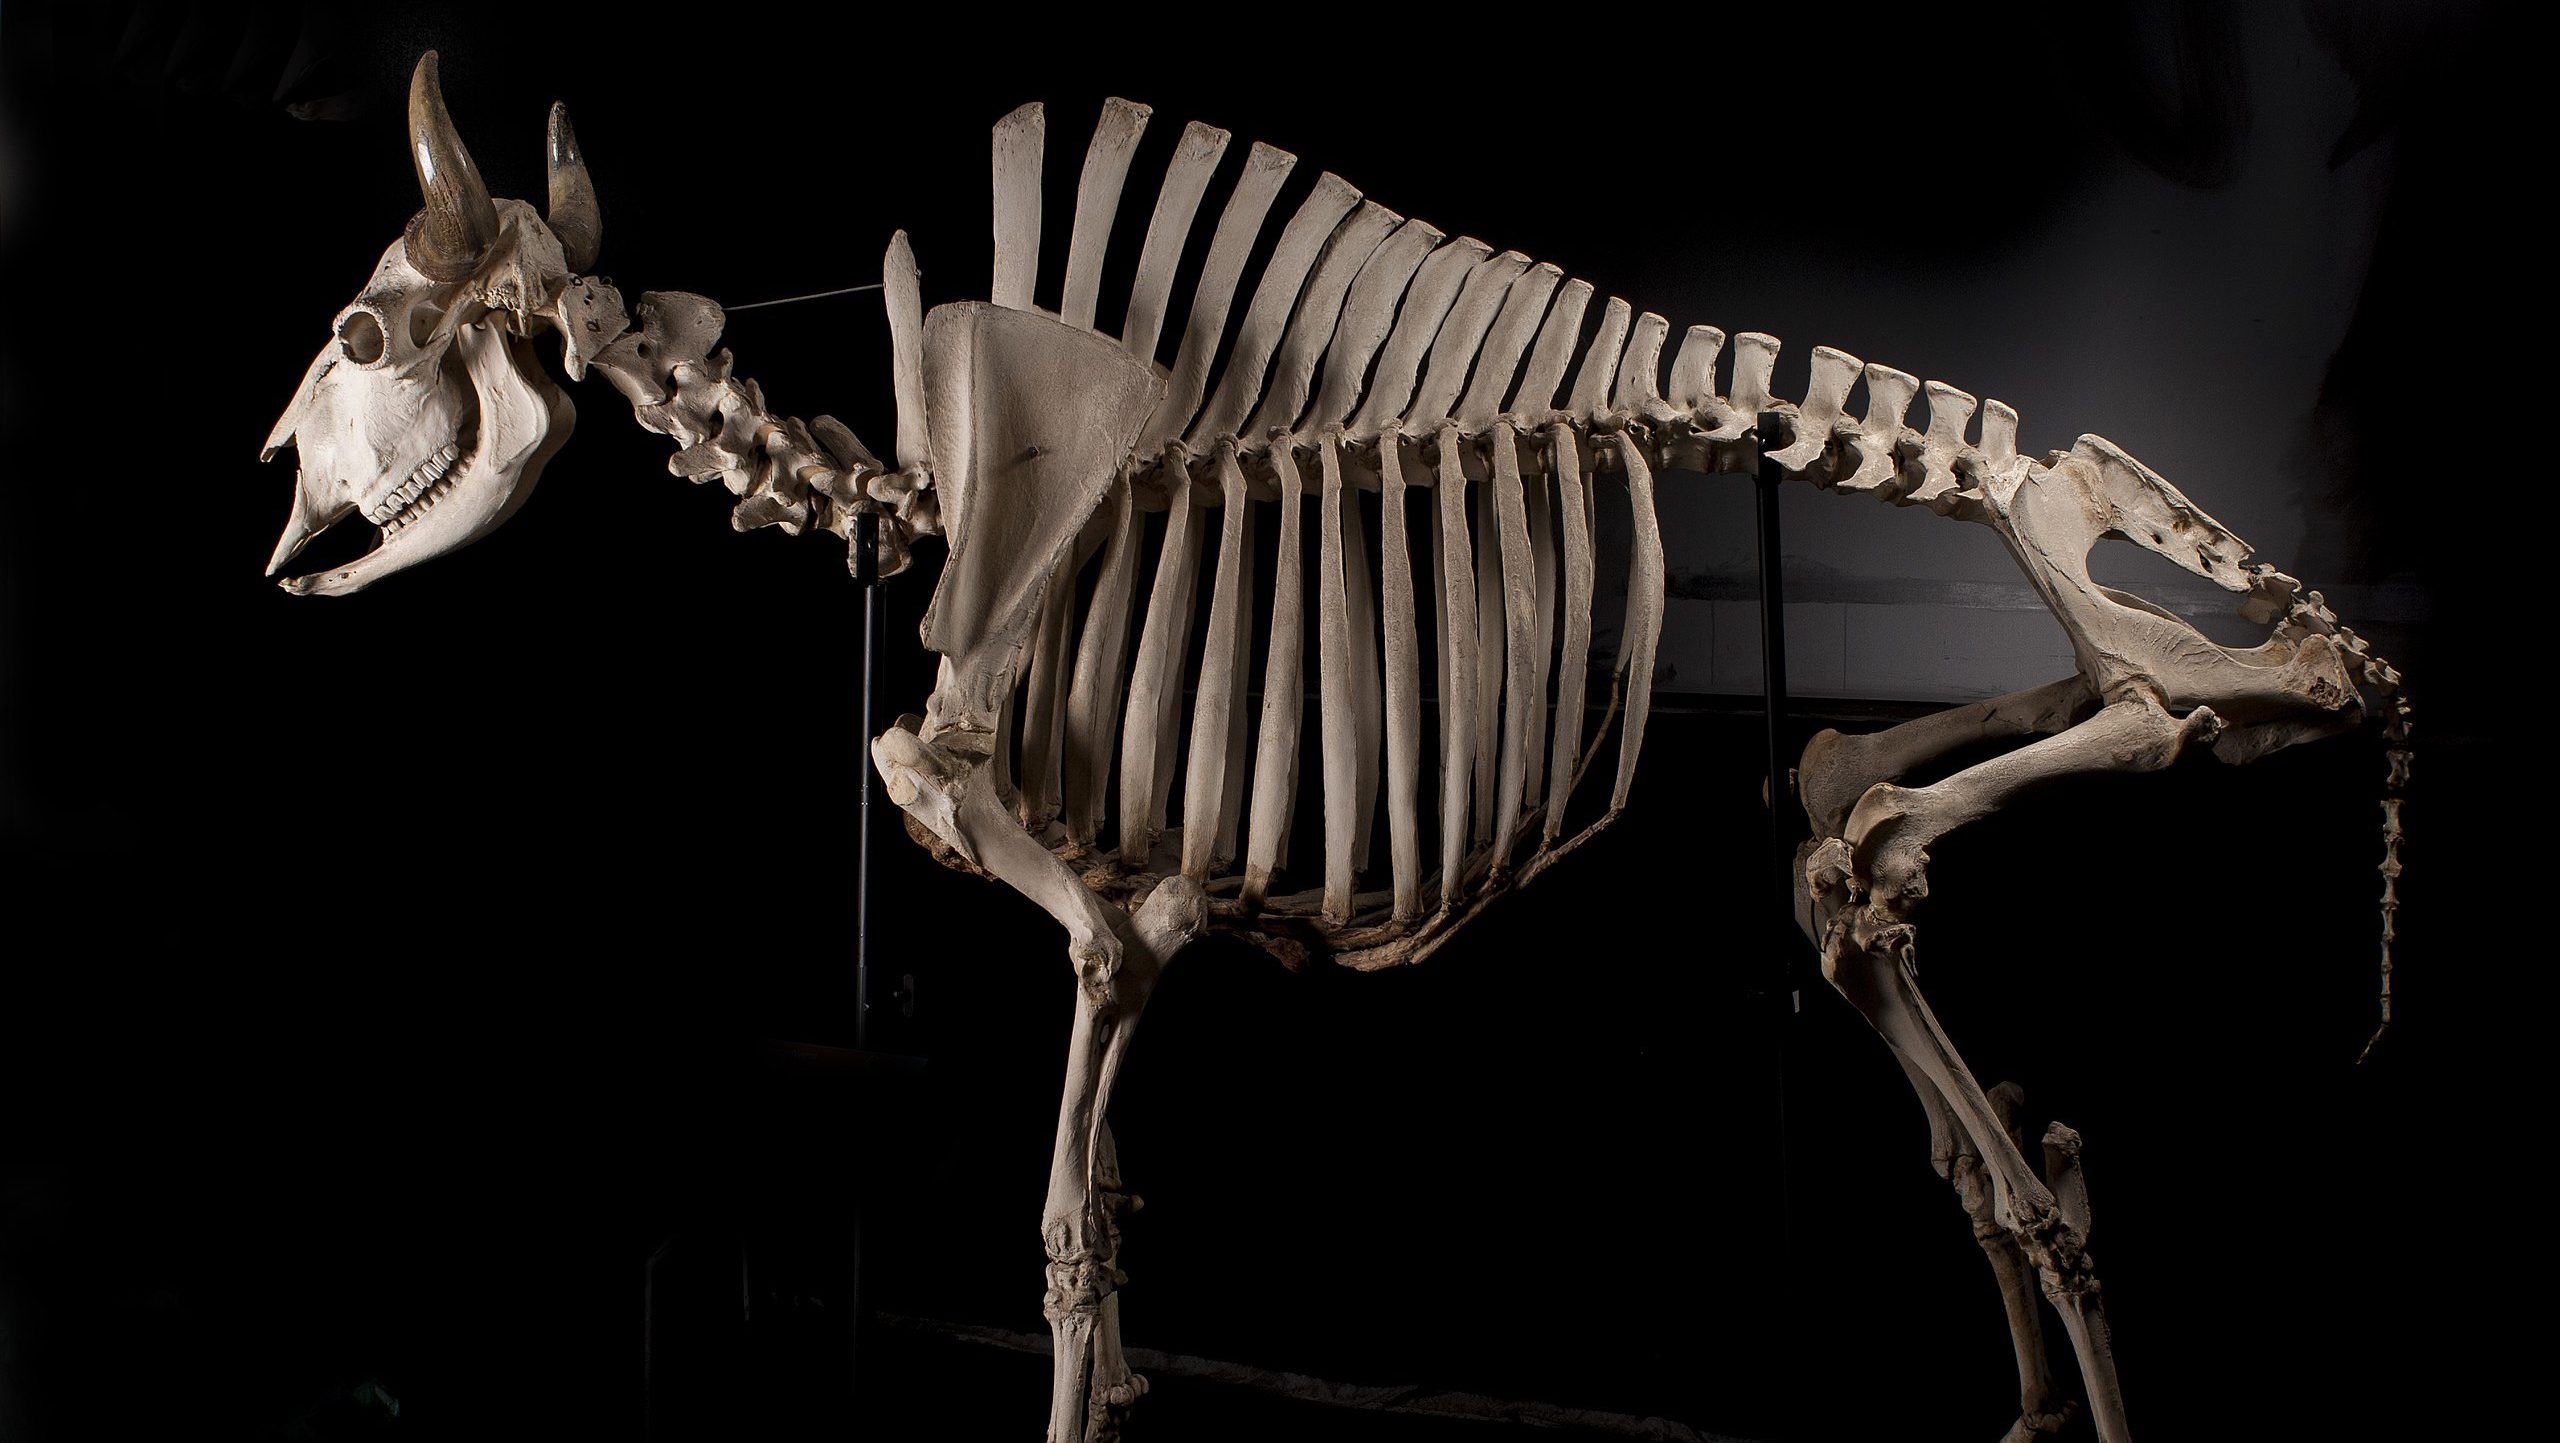 skeleton of a bison against a black background